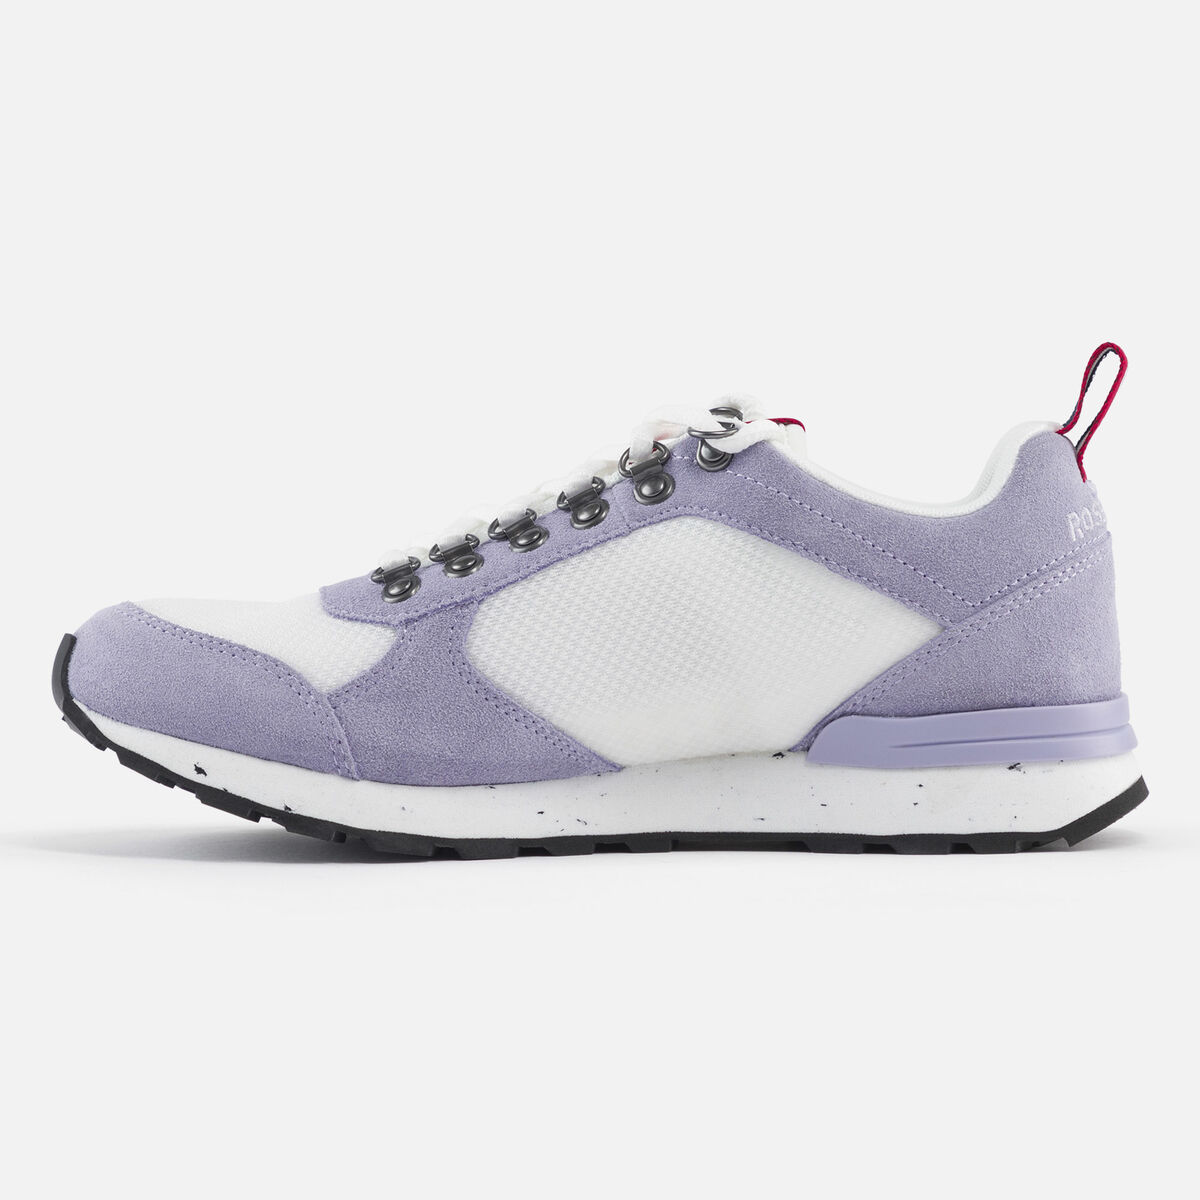 Rossignol Men's Heritage Special lavender sneakers Pink/Purple